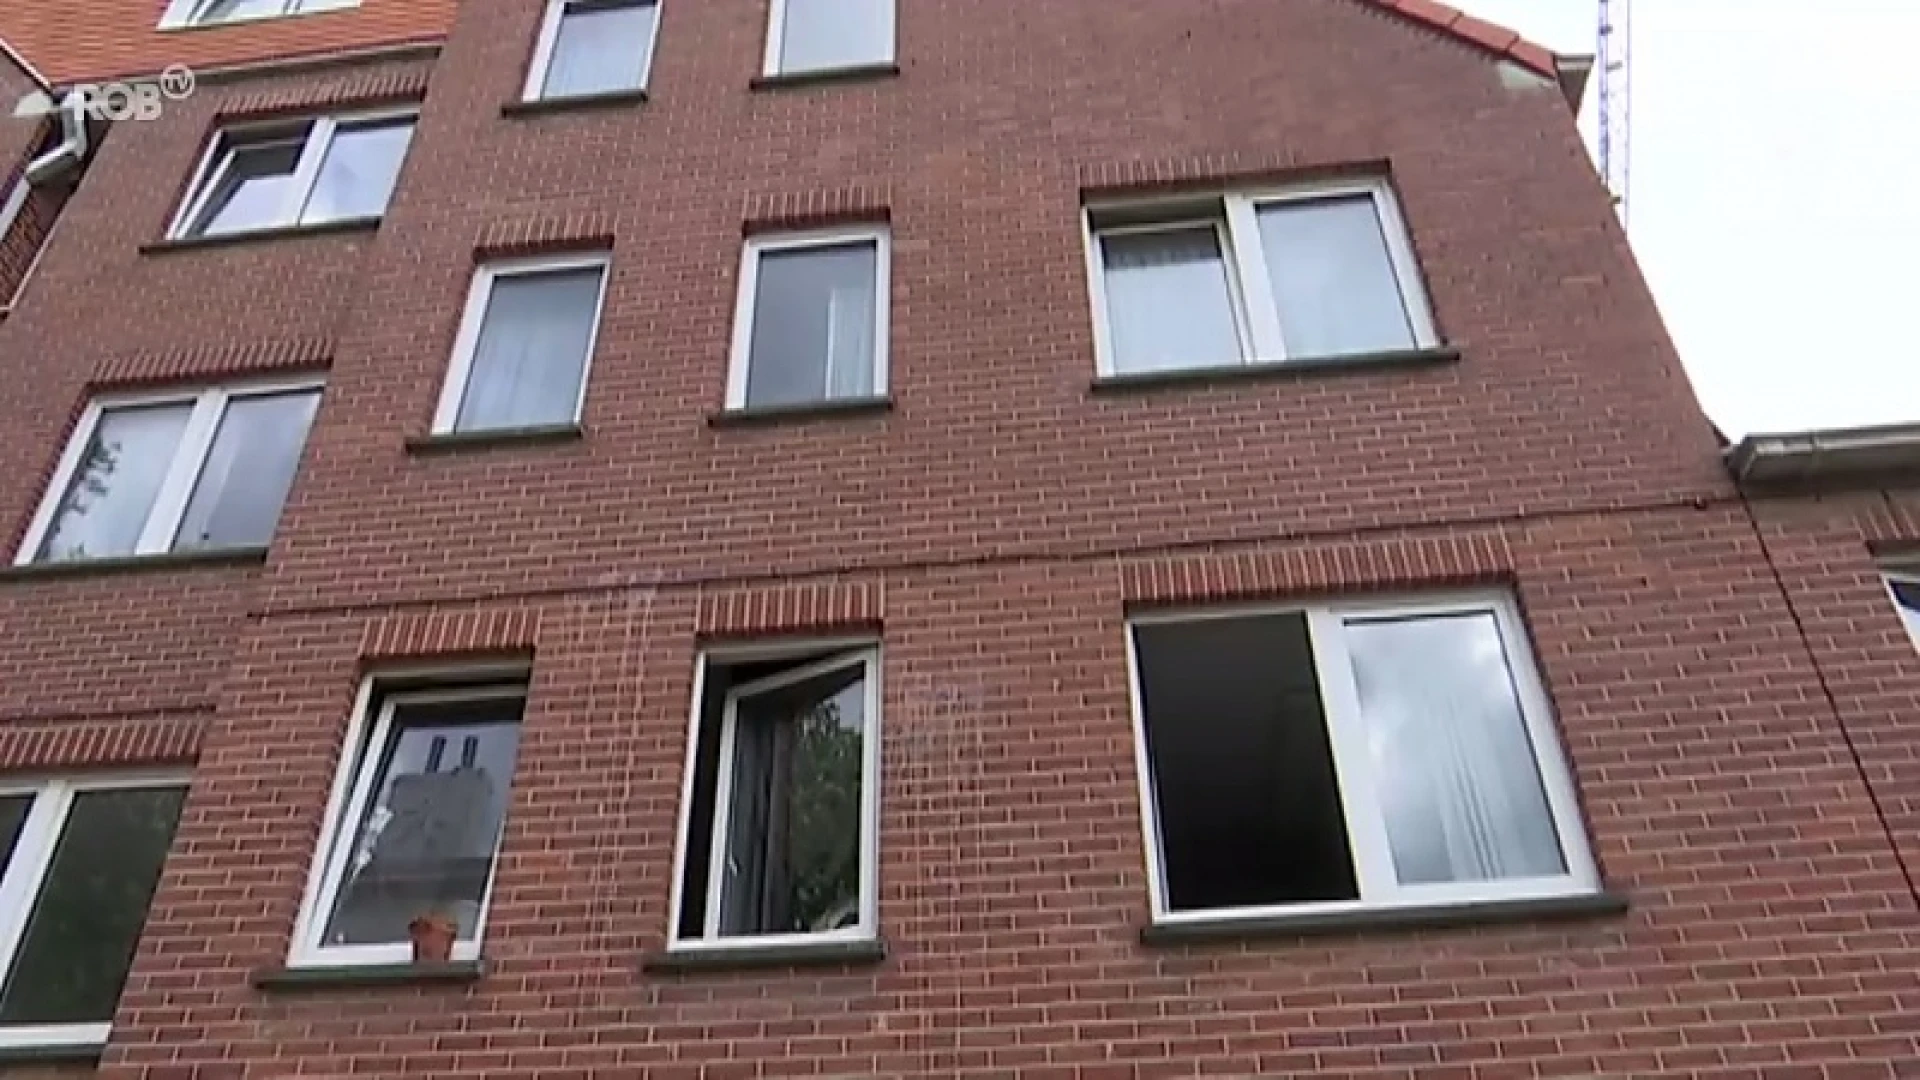 Stad Leuven keurde vorig jaar de kwaliteit van meer dan duizend woningen goed, die eerder afgekeurd waren